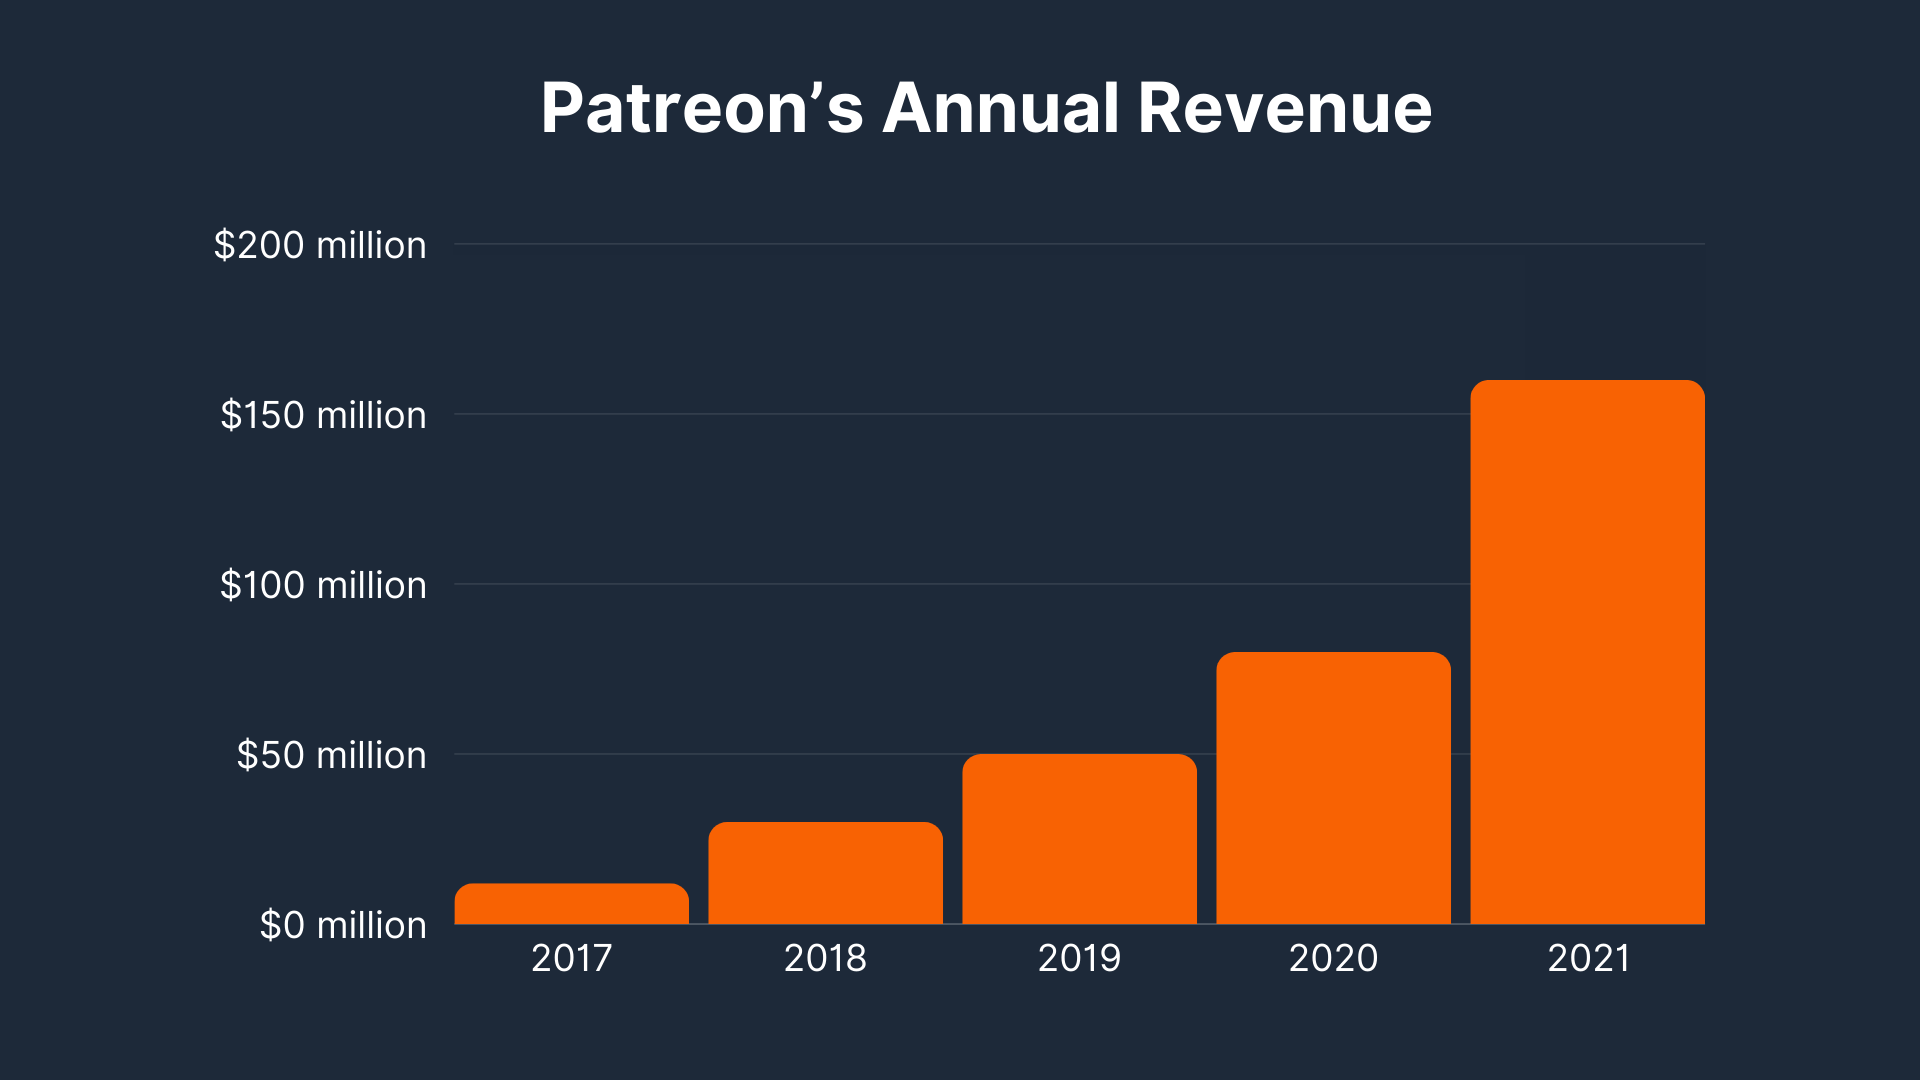 Patreon’s Annual Revenue